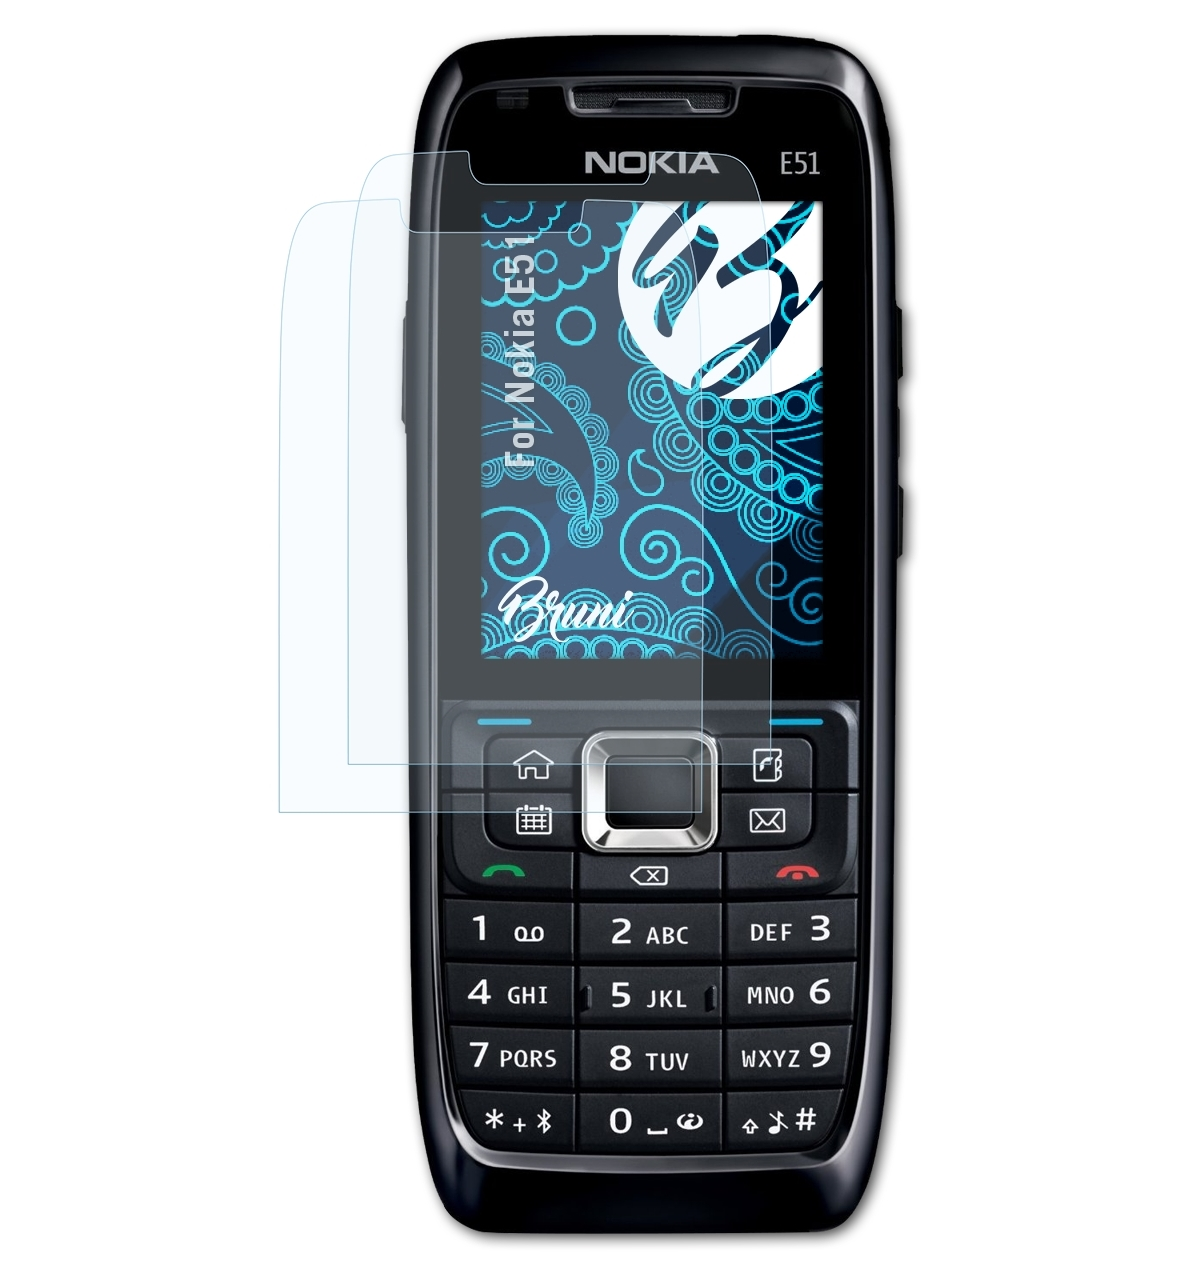 Nokia 2x E51) Schutzfolie(für Basics-Clear BRUNI